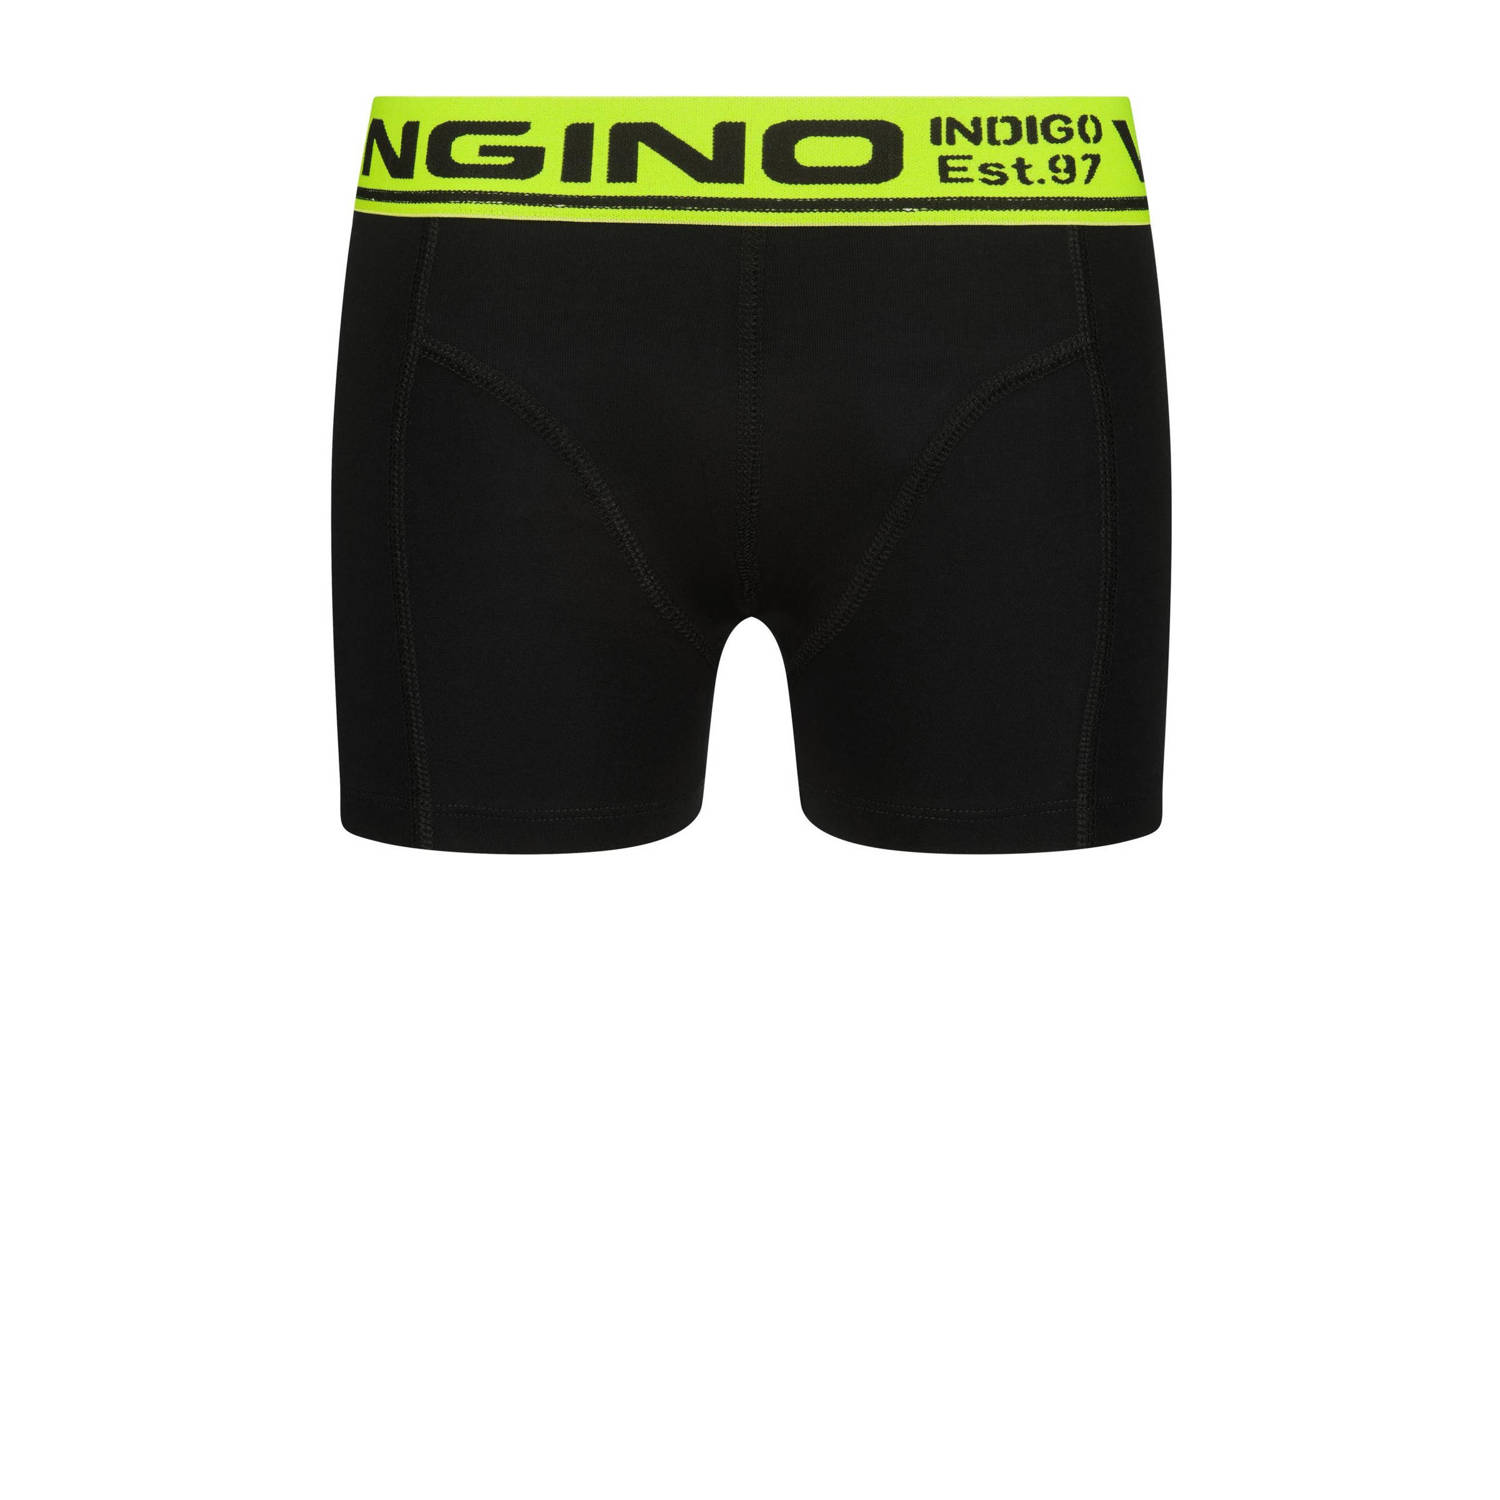 Vingino boxershort Check set van 3 zwart neon geel